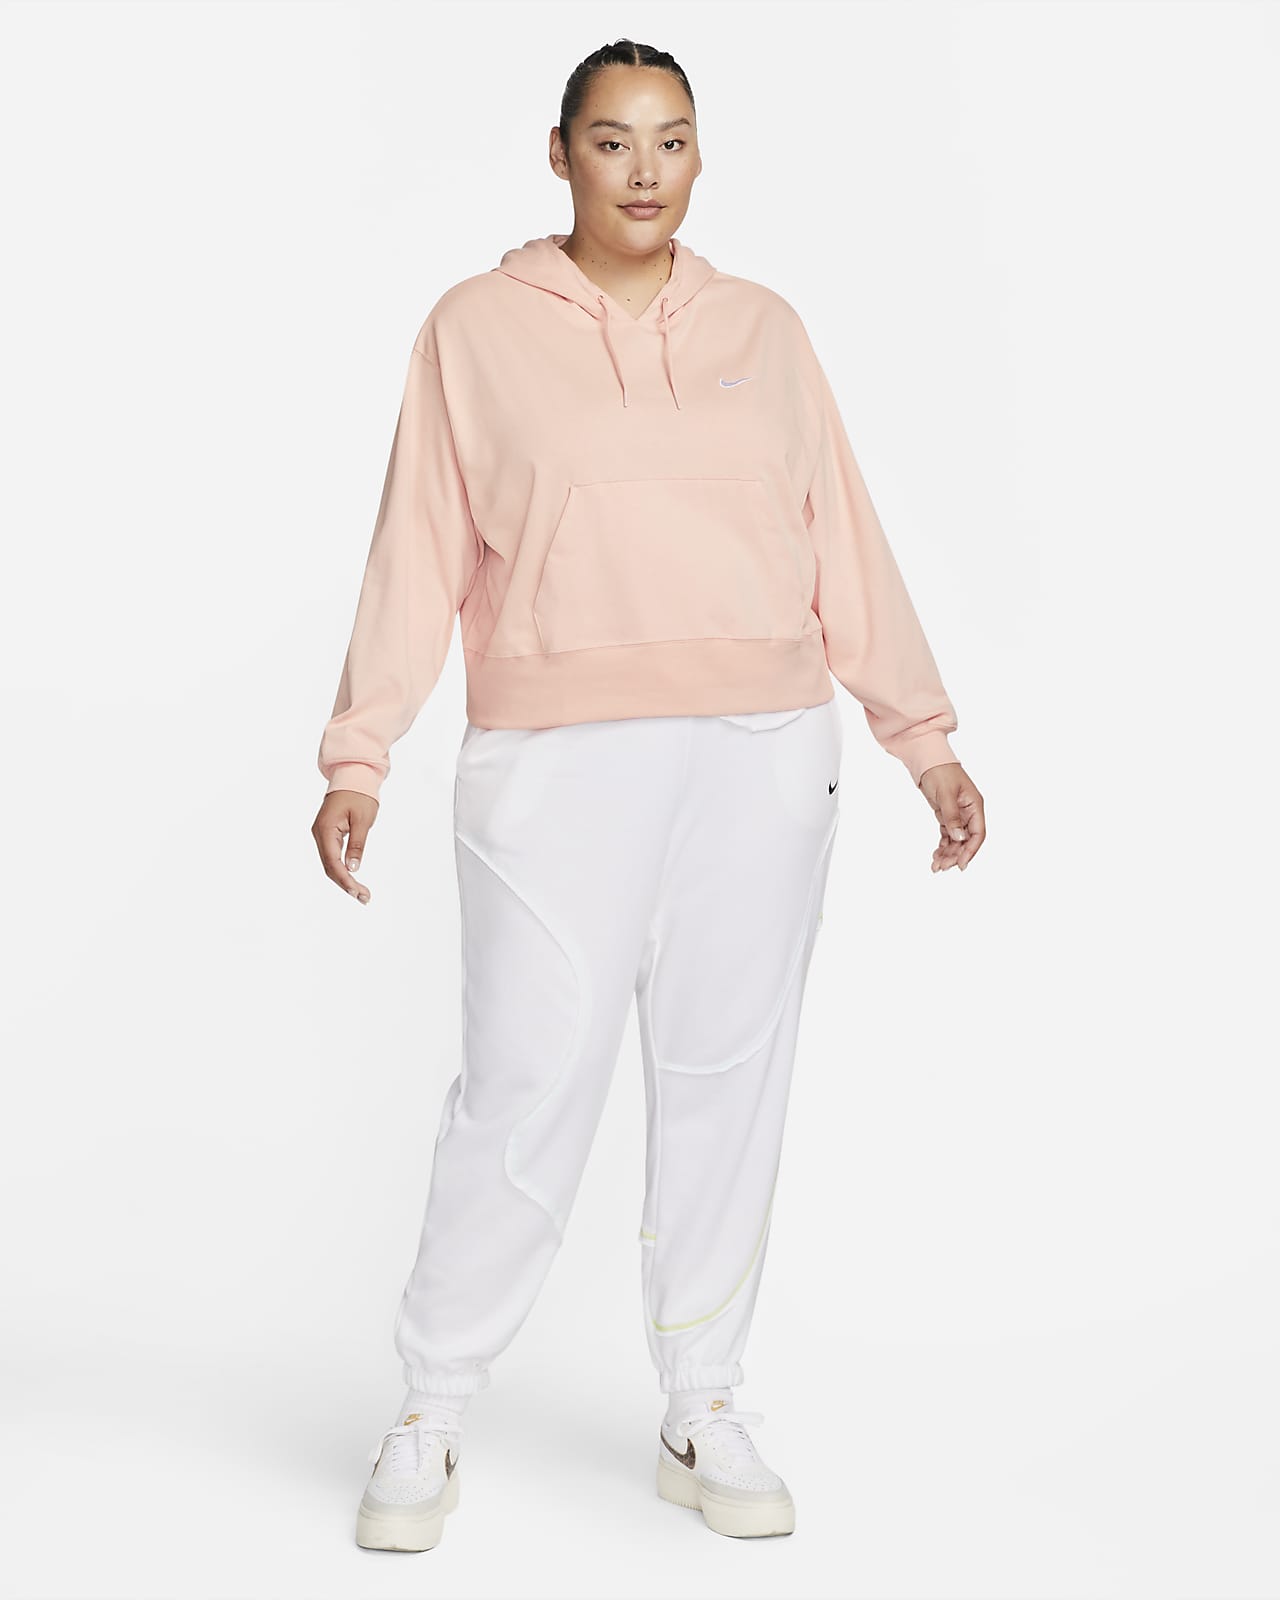 Nike Sportswear Women's Oversized Jersey Pullover Hoodie (Plus Size).  Nike.com